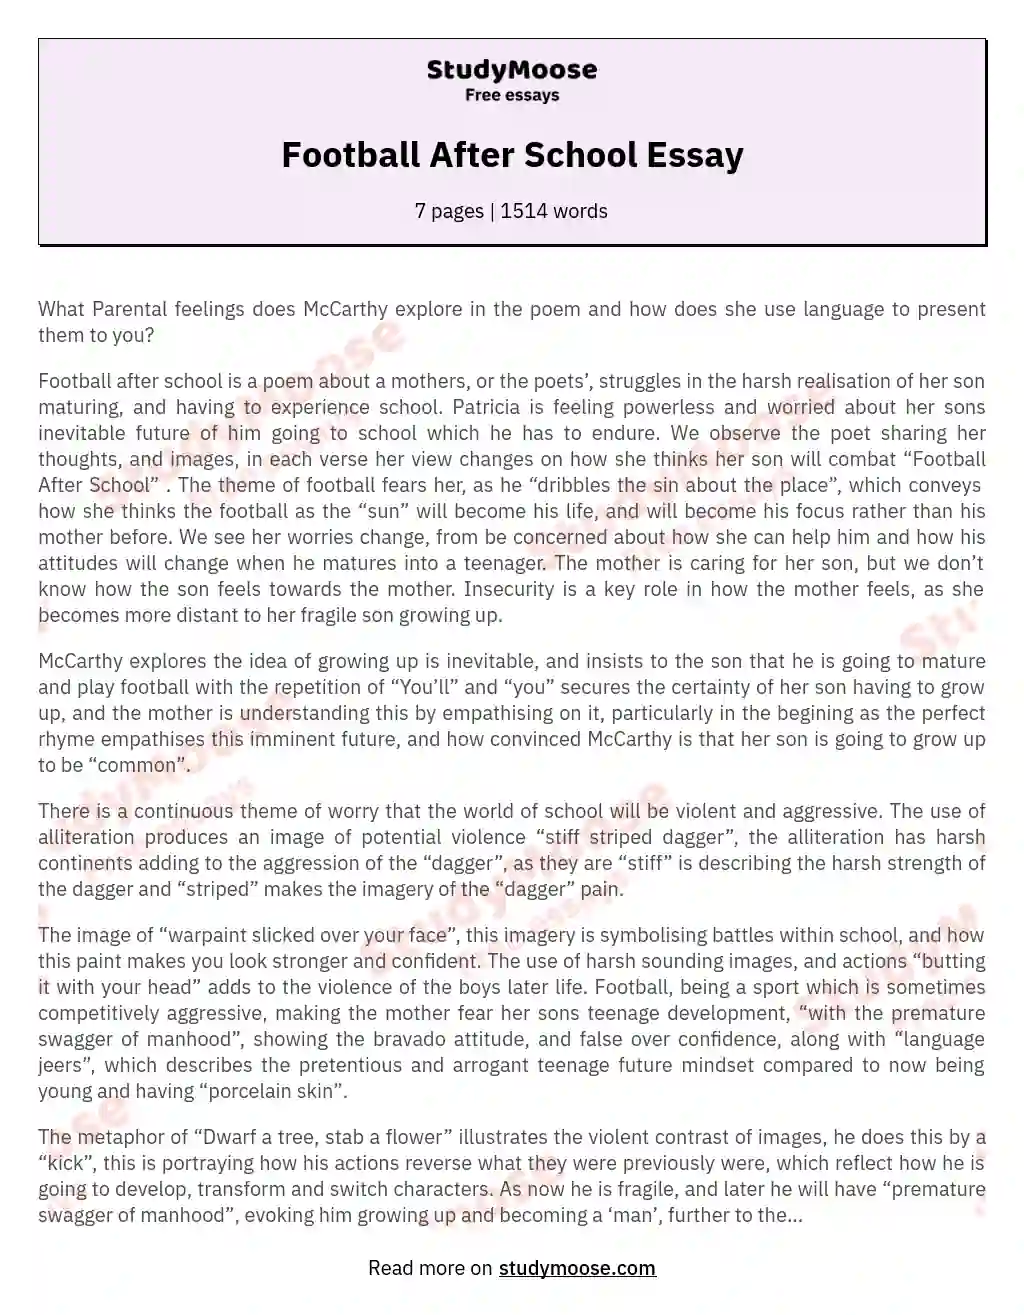 Football After School Essay essay